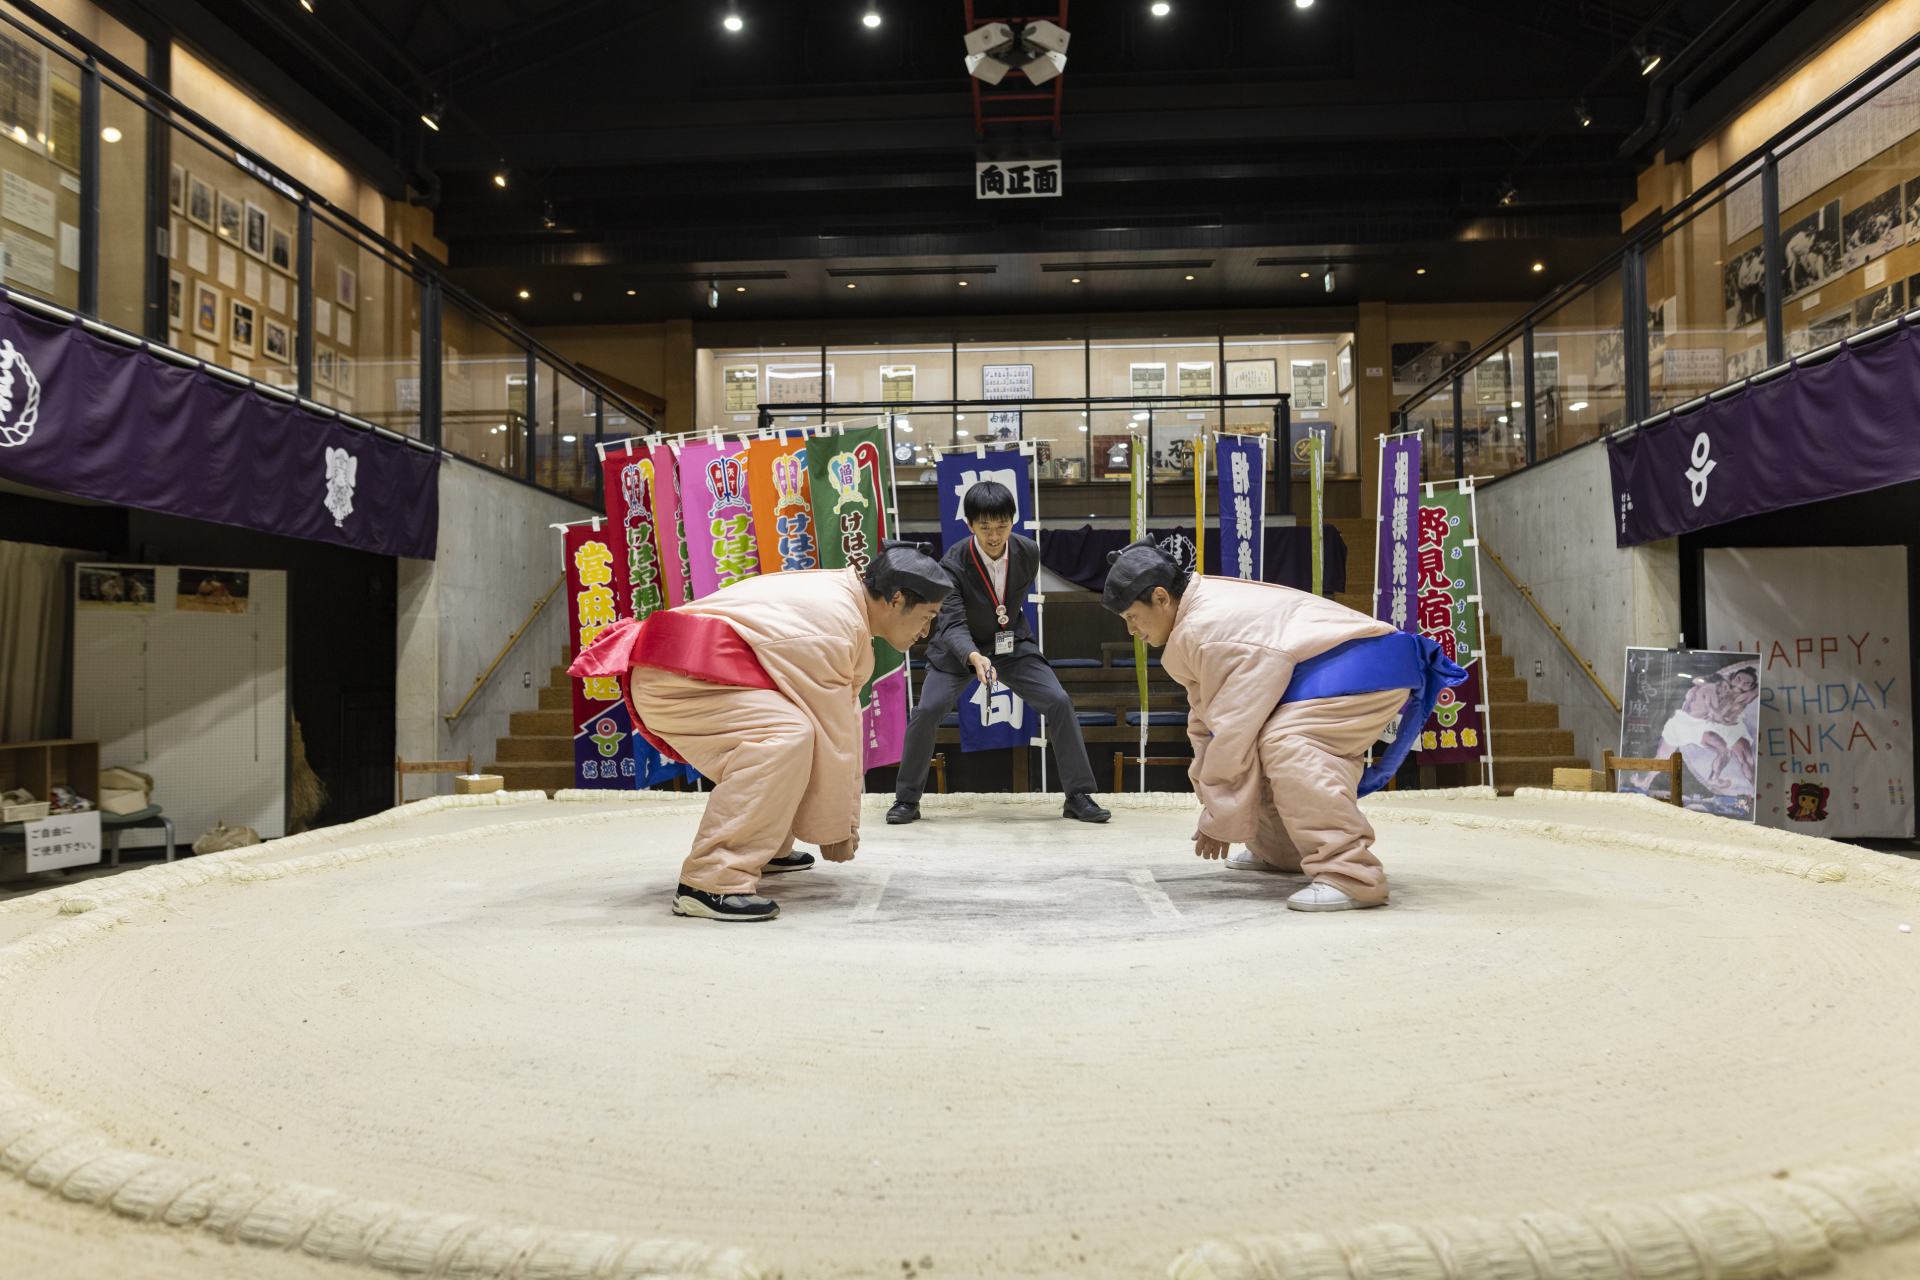 土俵に上がることができるユニークな場所、葛城市相撲館「けはや座」で相撲に挑戦。